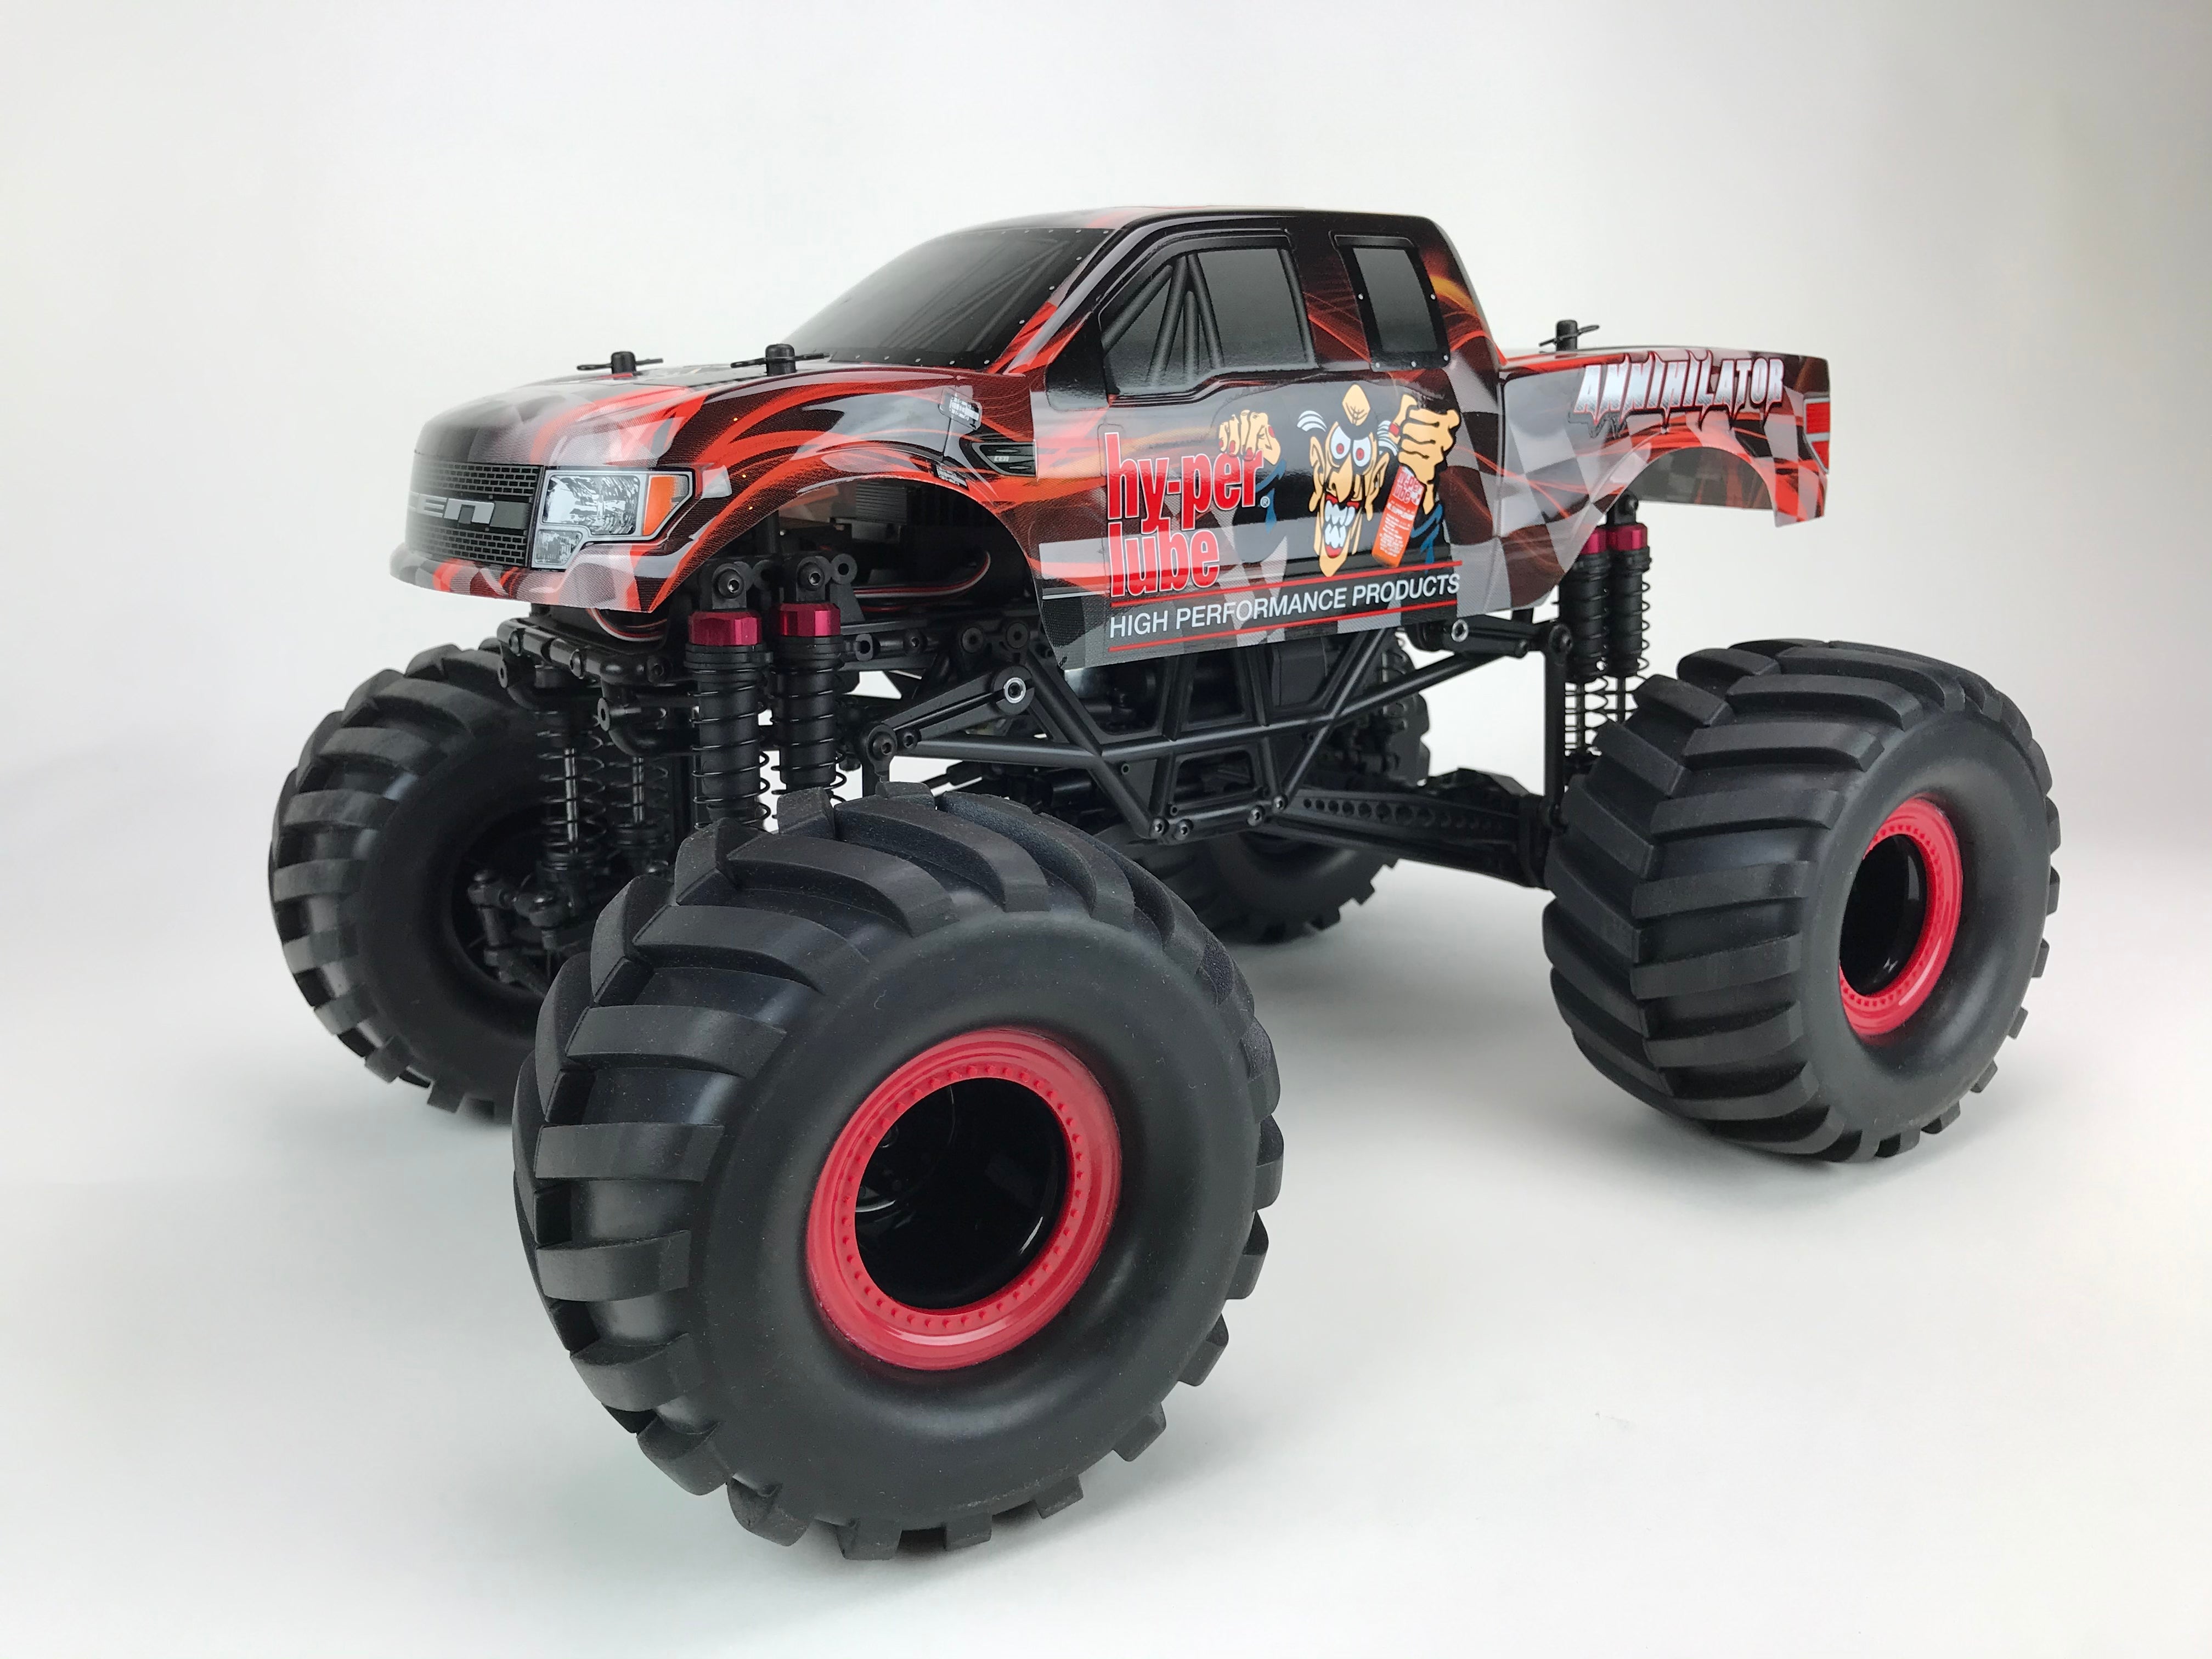 Monster Truck RC